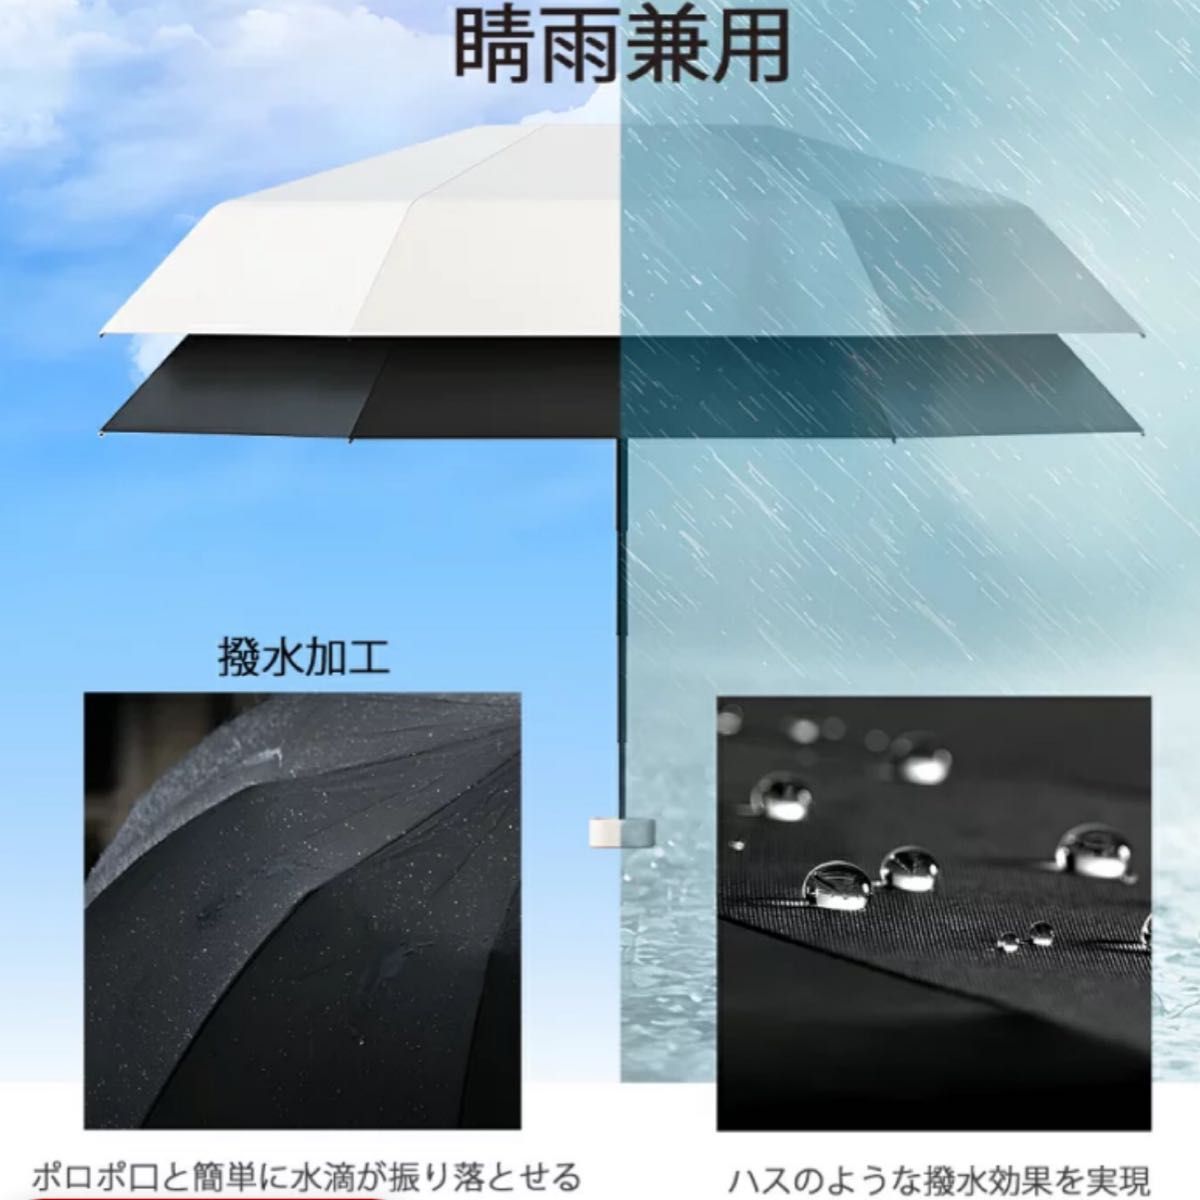 折りたたみ傘 晴雨兼用 日傘 紫外線対策 撥水加工 UVカット 軽量 コンパクト ミニ 雨傘 遮光 涼しい 小さい 軽い 折り畳み